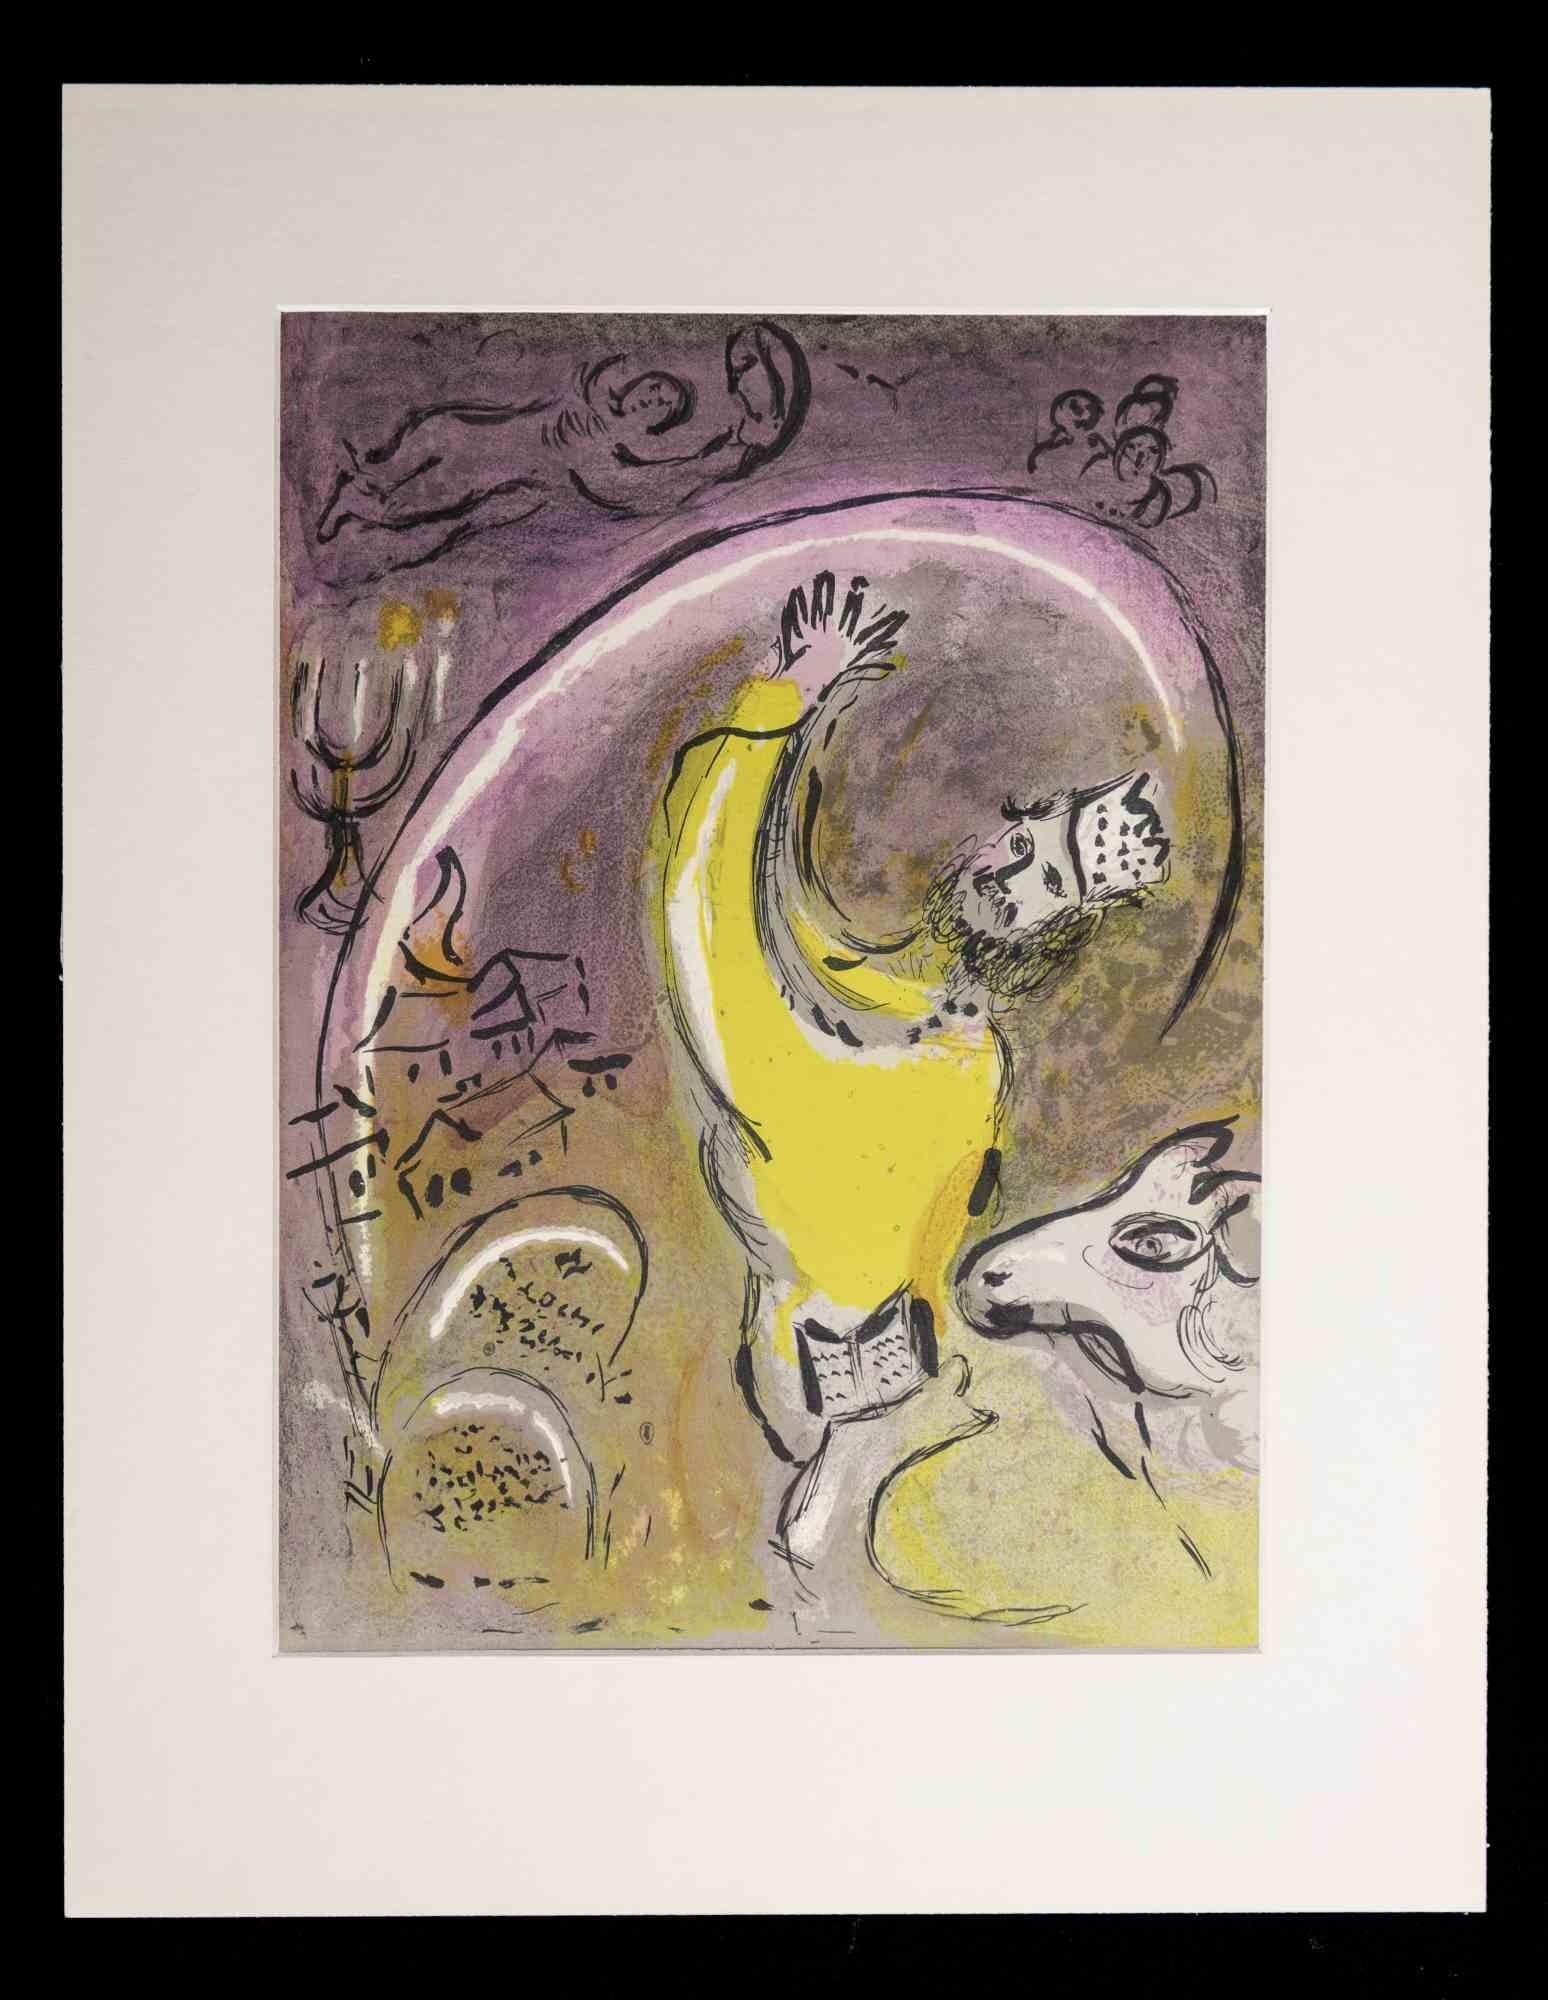 Salomon - Tafel aus der Bibel I ist ein Original-Kunstwerk von Marc Chagall aus dem Jahr 1960.

Gemischtfarbige Lithographie.

Mourlot 131

Das Kunstwerk stammt aus der Serie "Die Bibel". 

Im Jahr 1931 machte sich Chagall im Auftrag des legendären